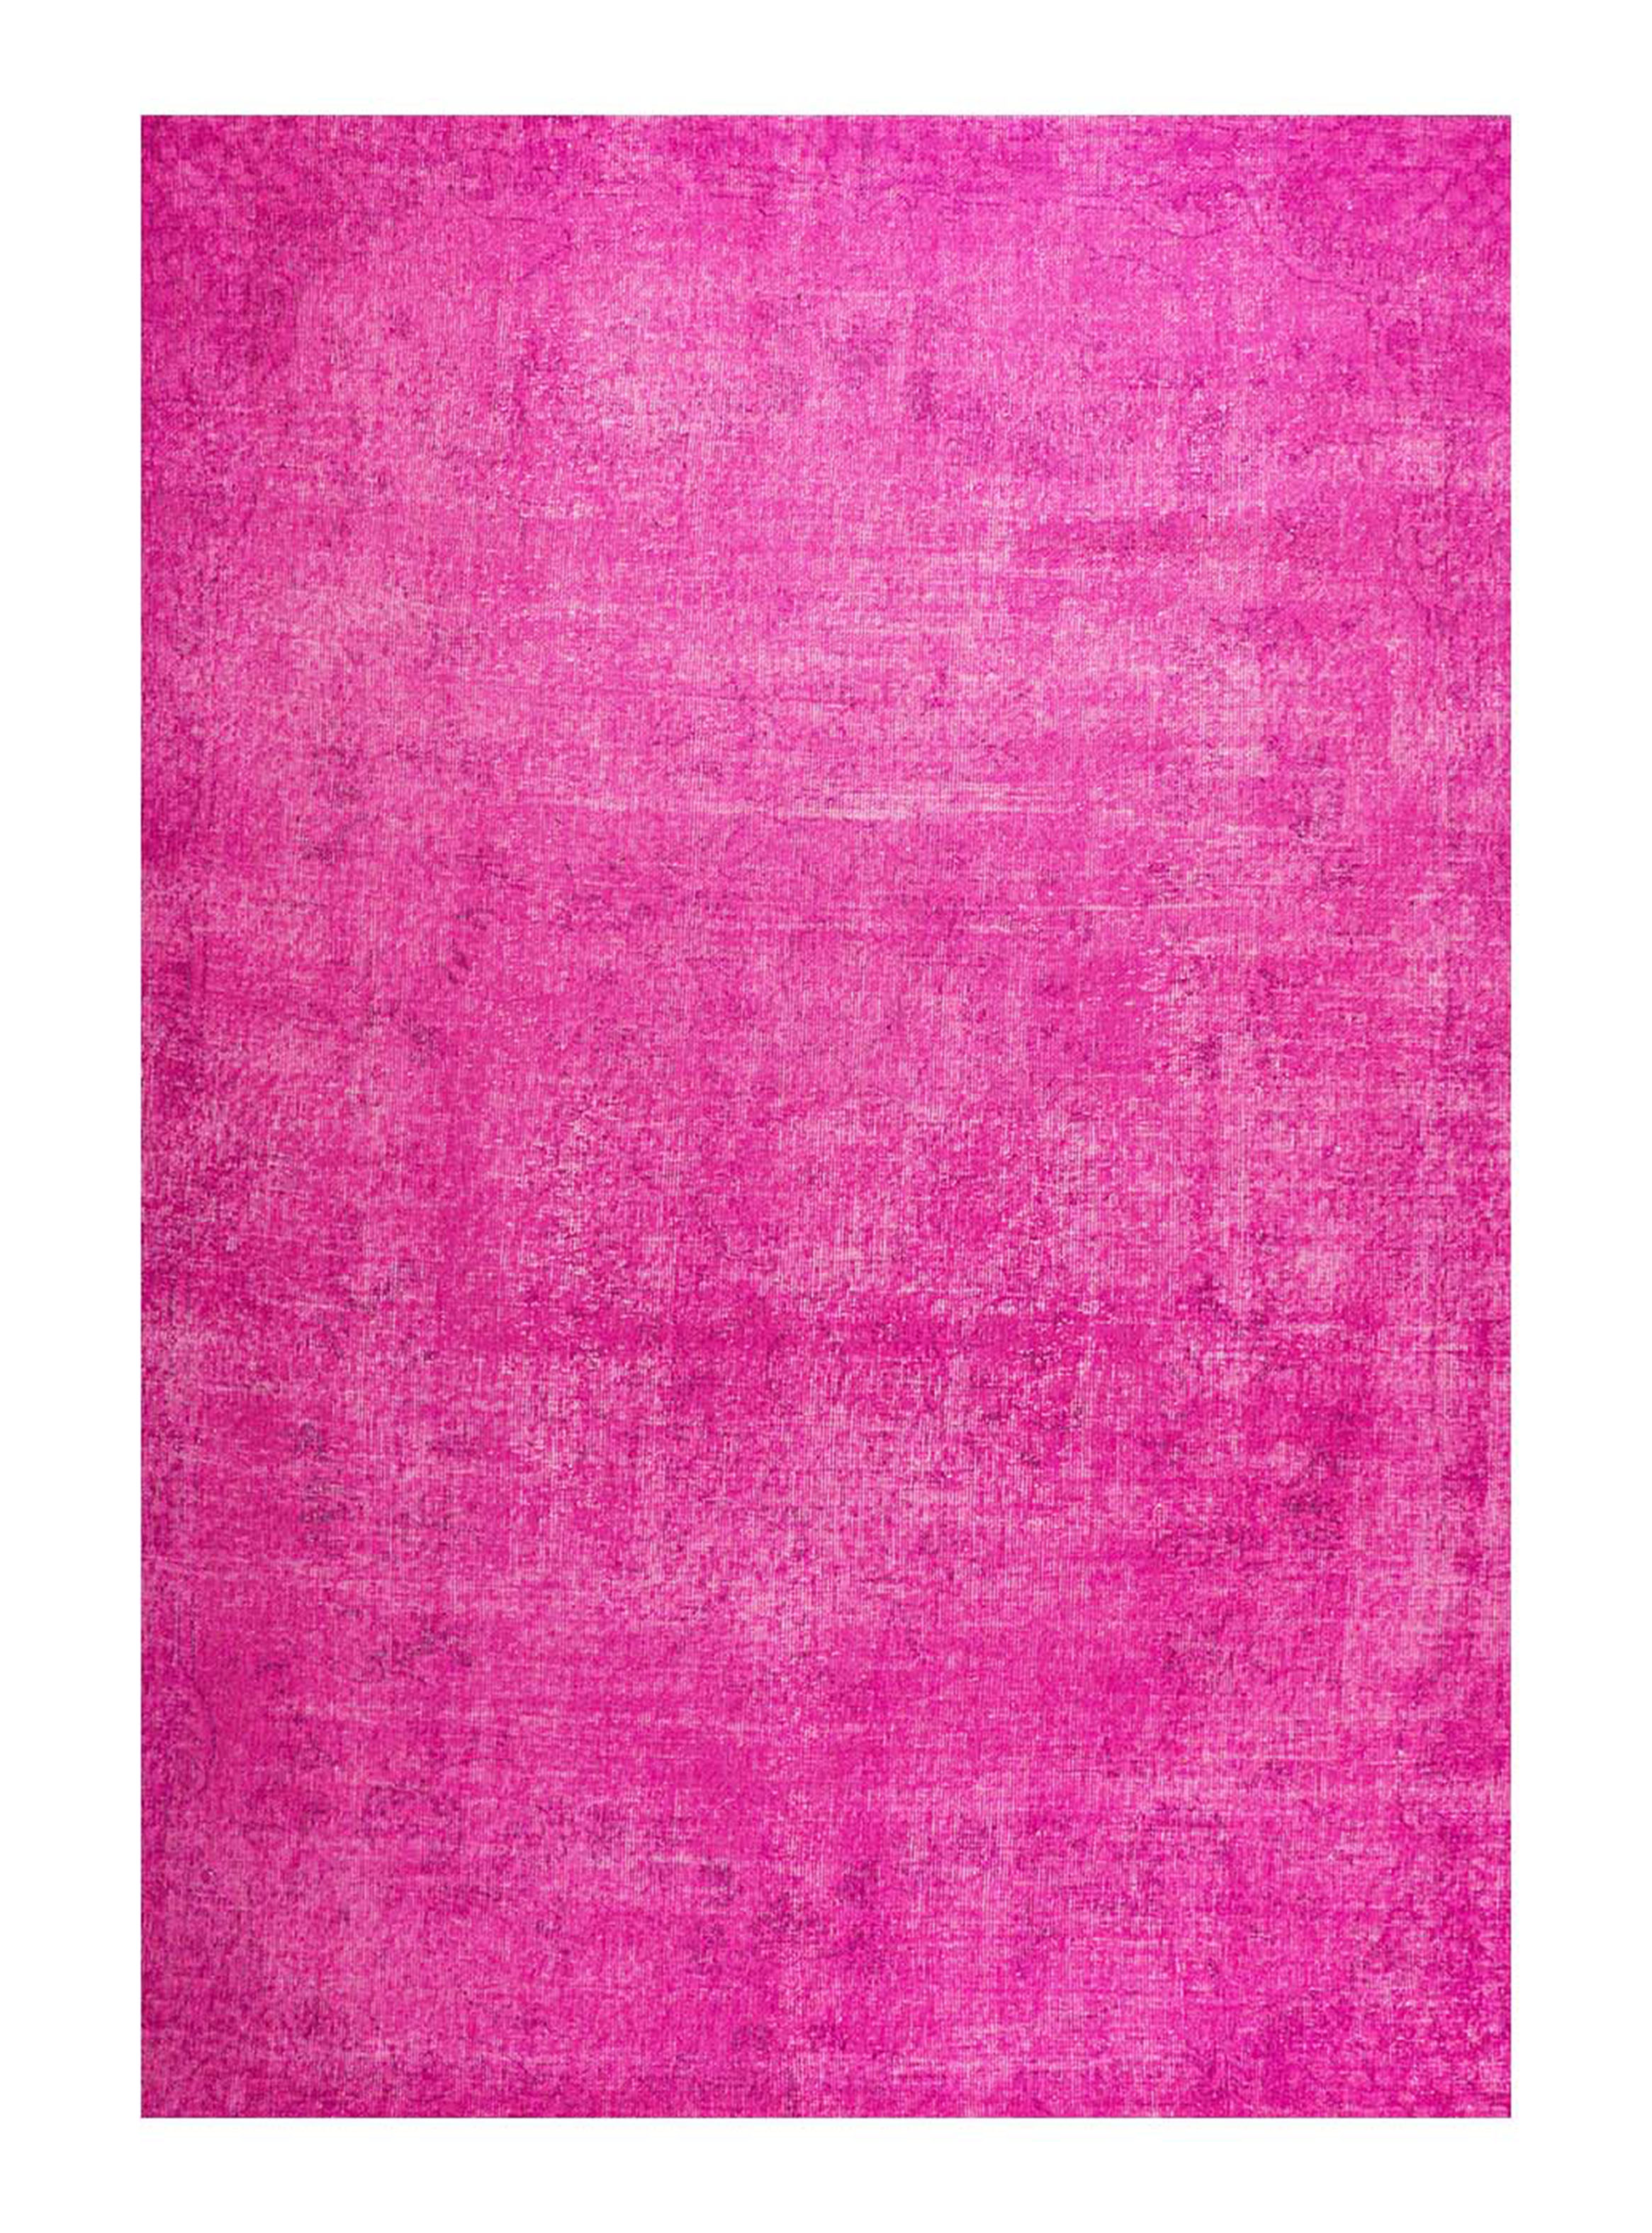 Alfombra Grande Color Rosa 180X240CM/71X94IN